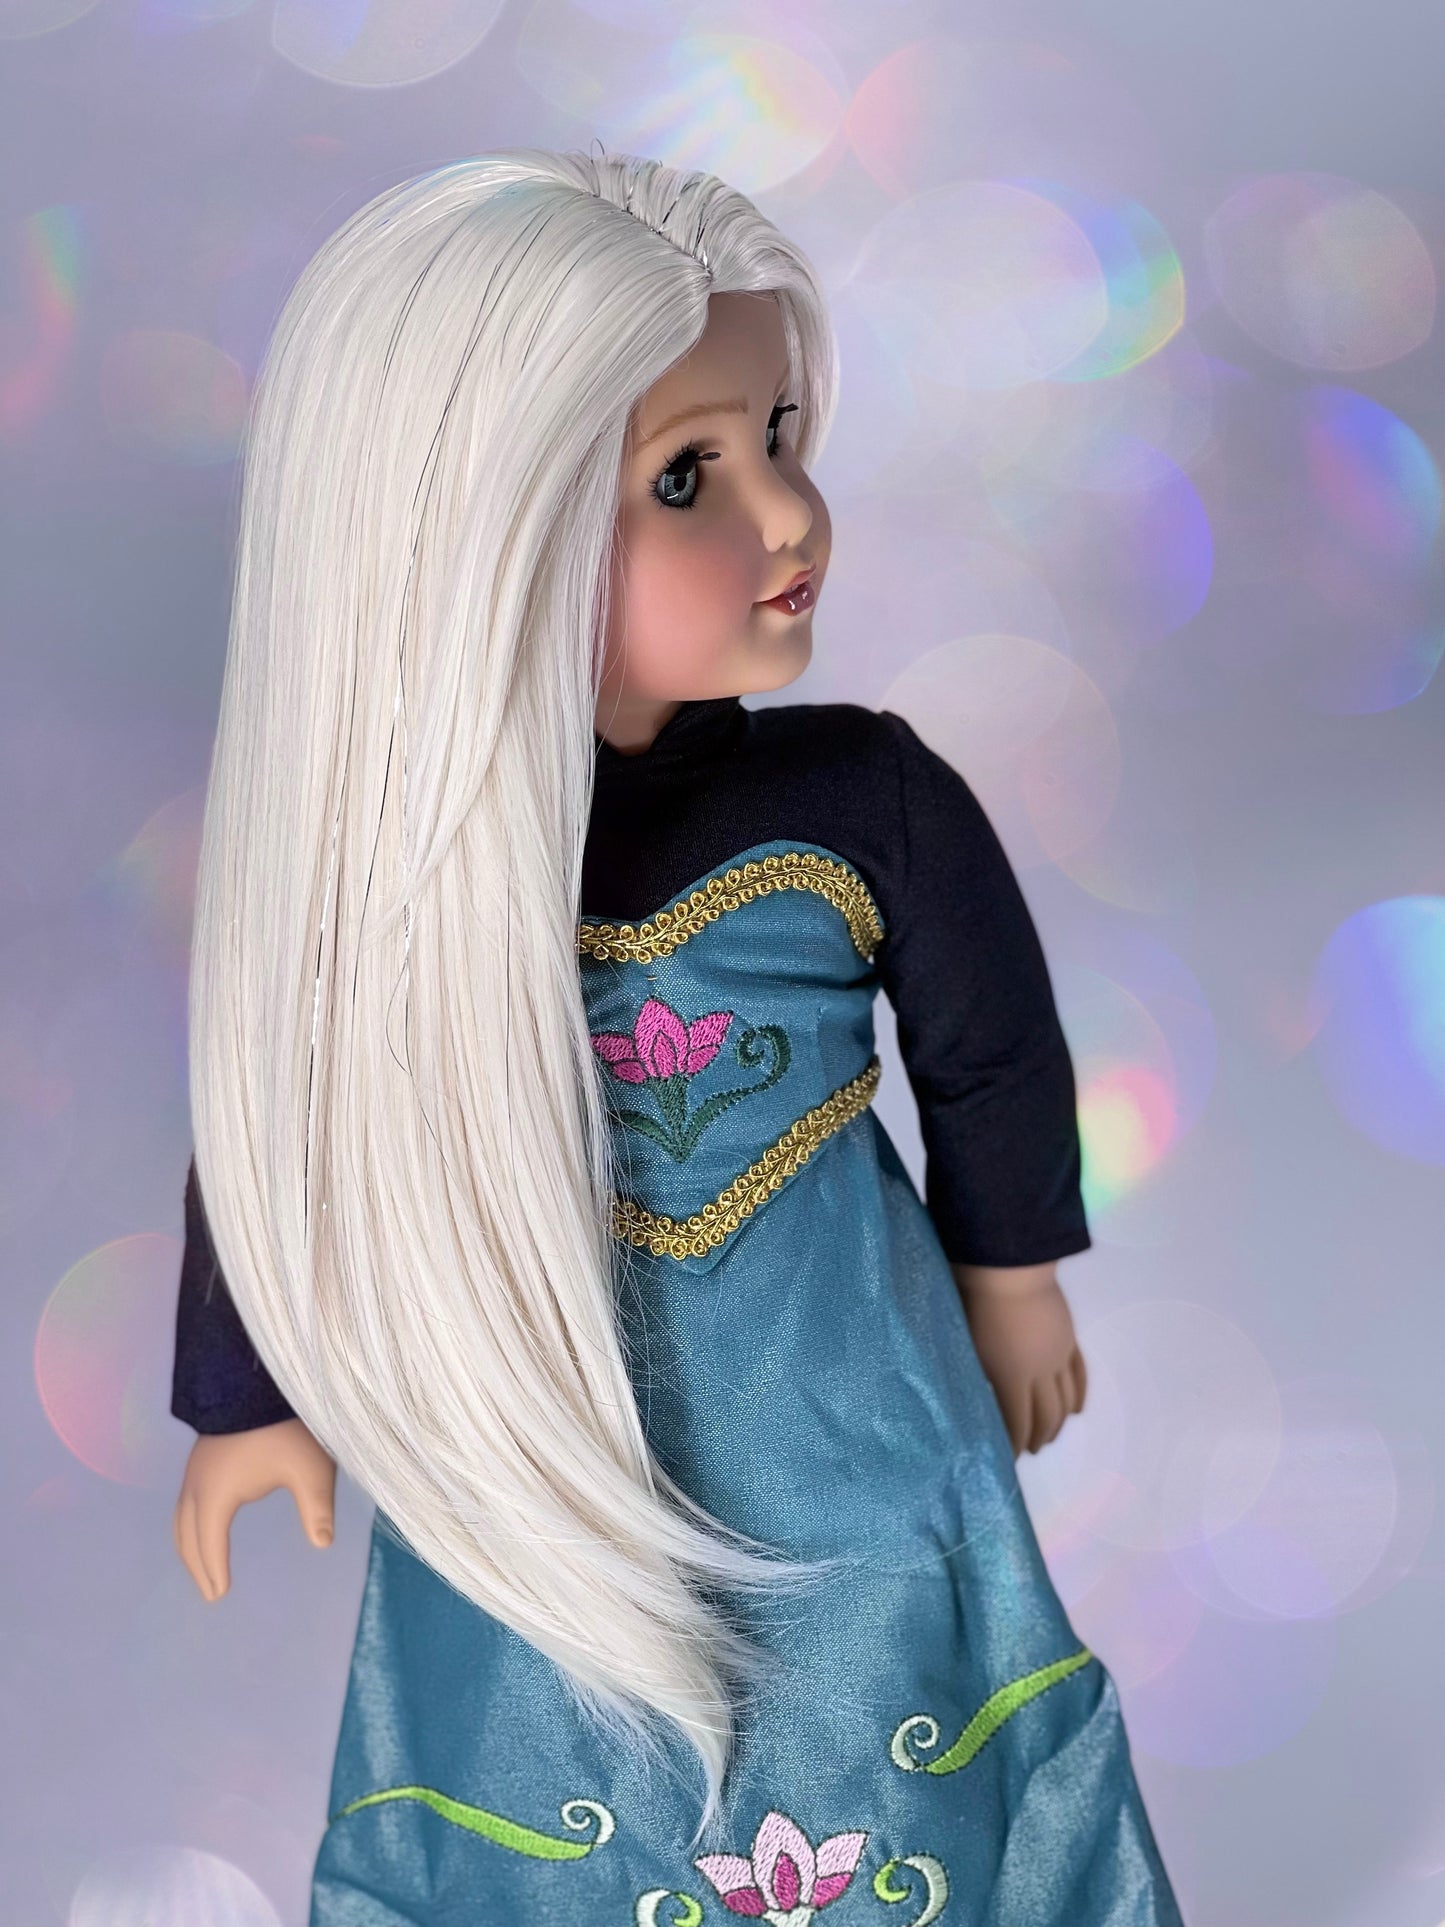 Frozen 2 Elsa inspired Ice Queen wig